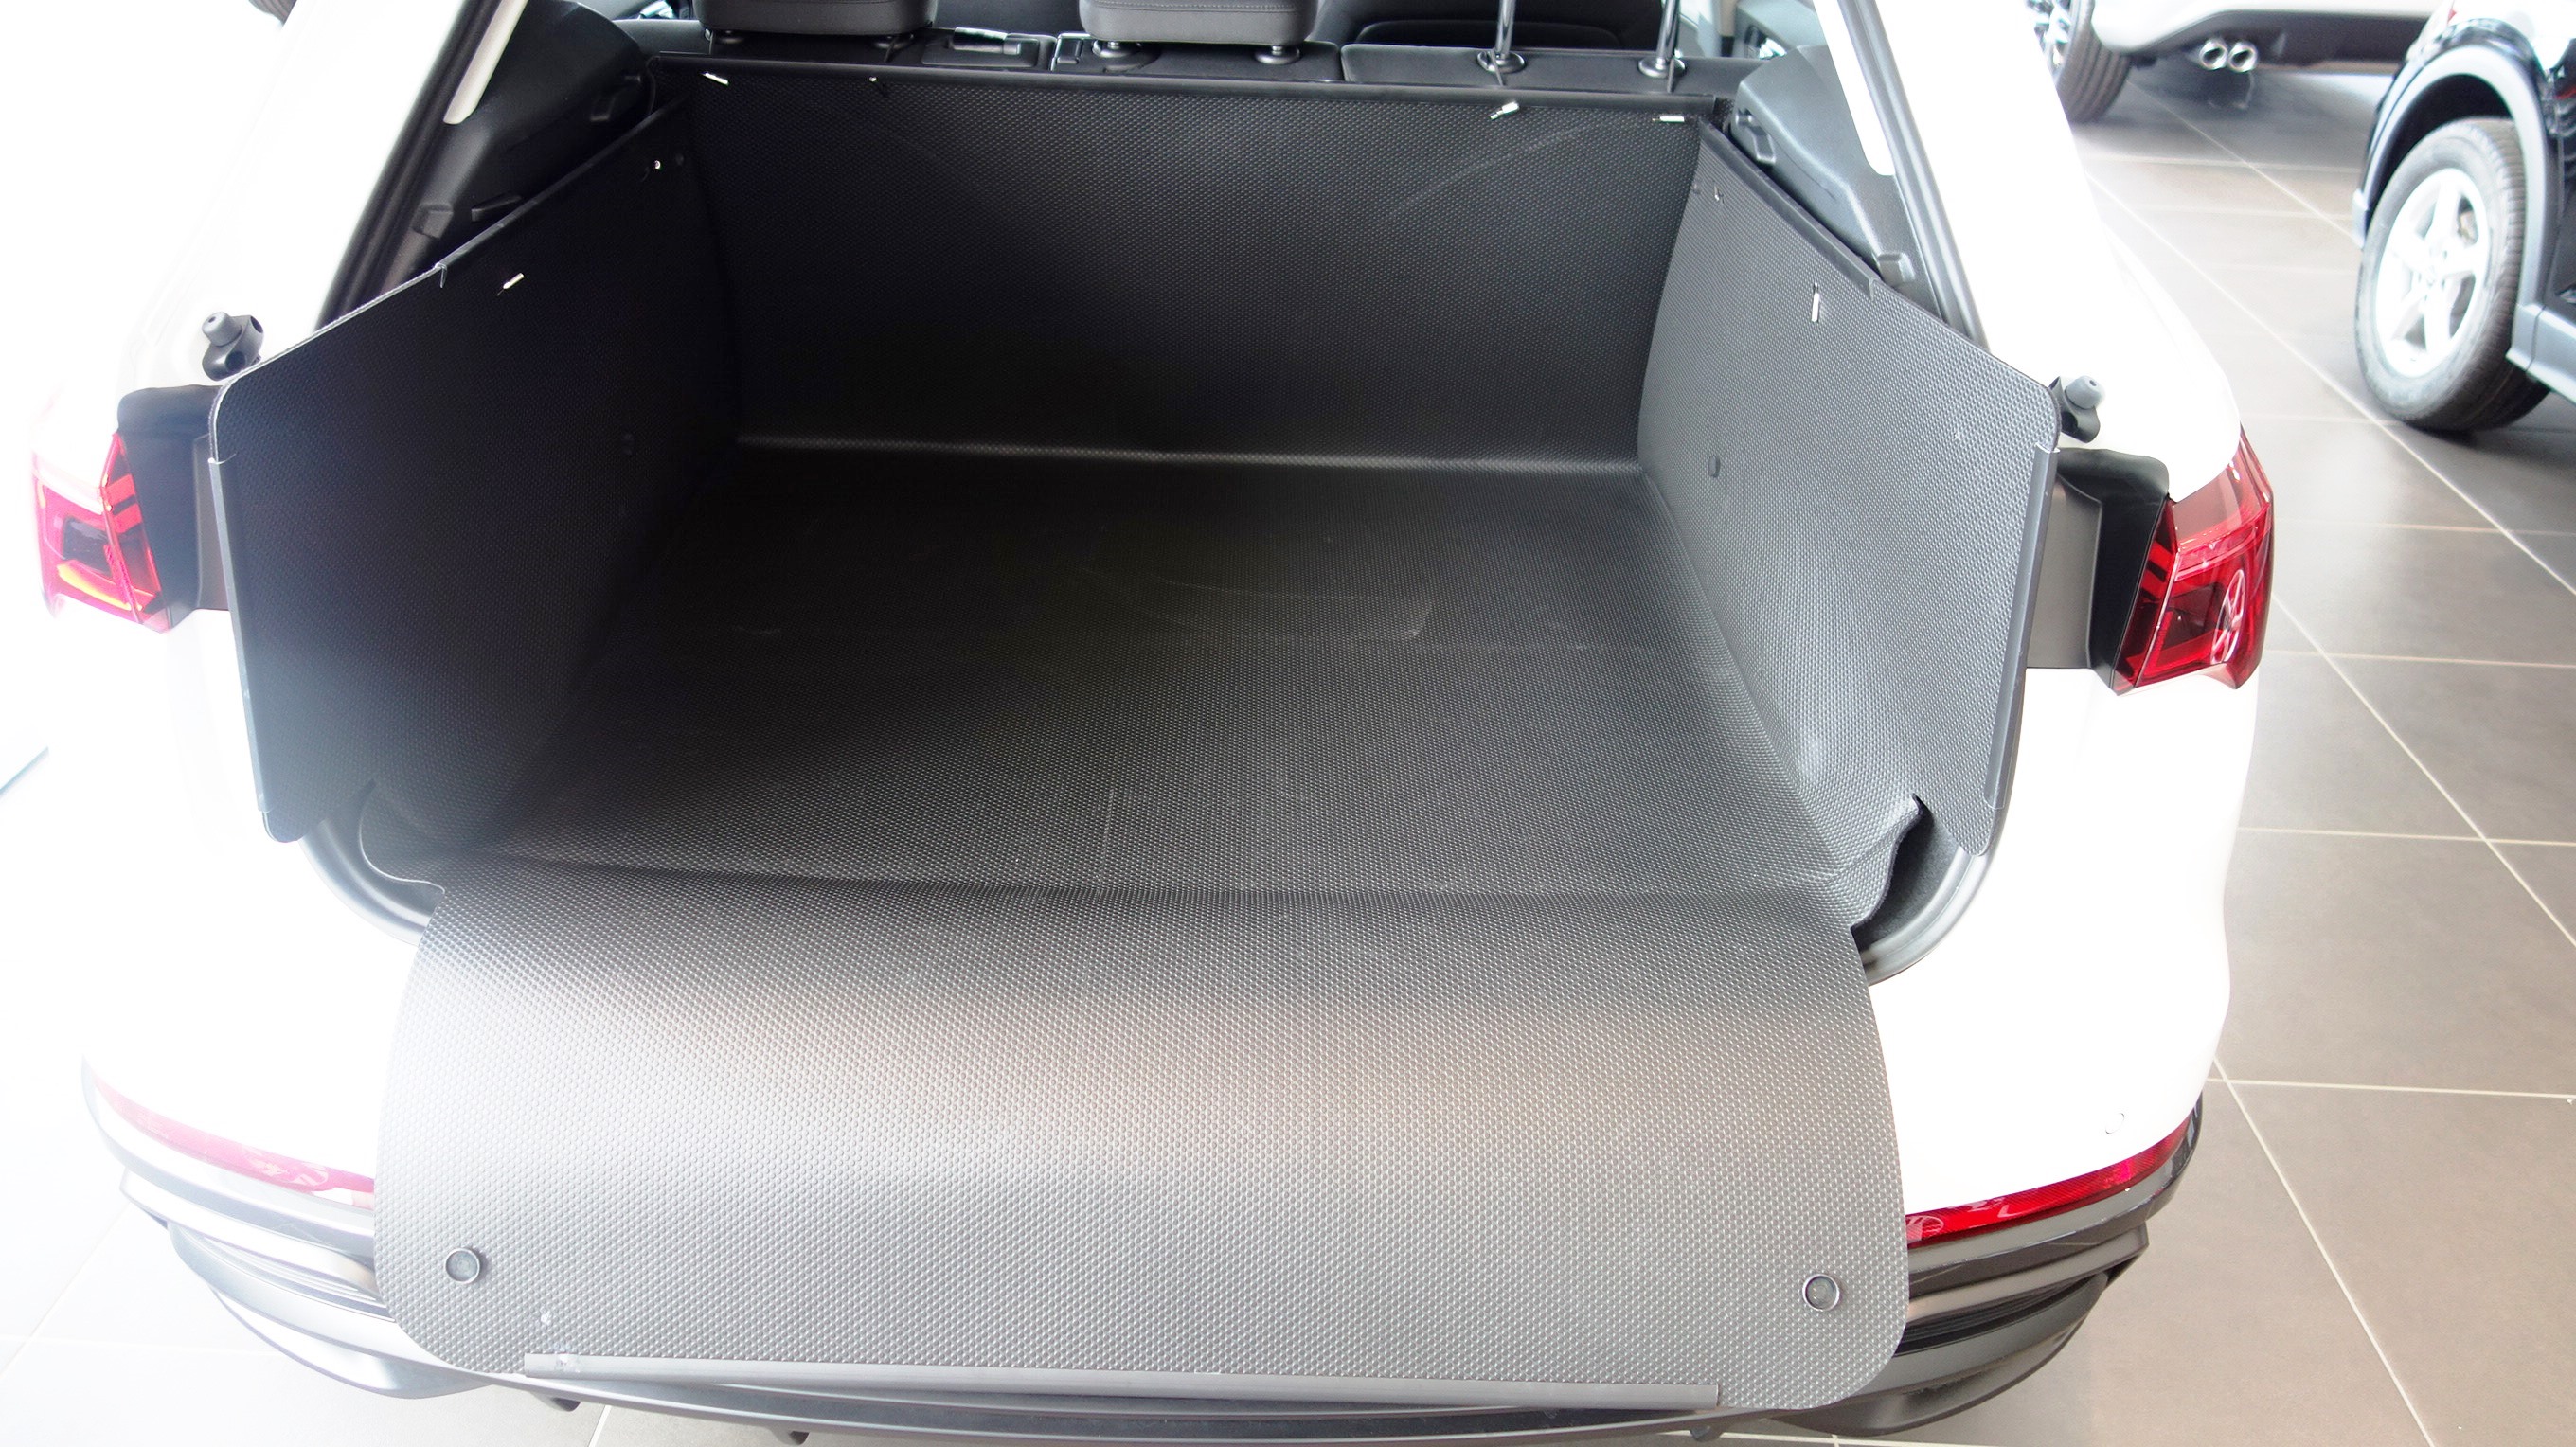 Audi Q3 Kofferraumschutz: Hohe, unverwüstliche Kofferraumwanne.